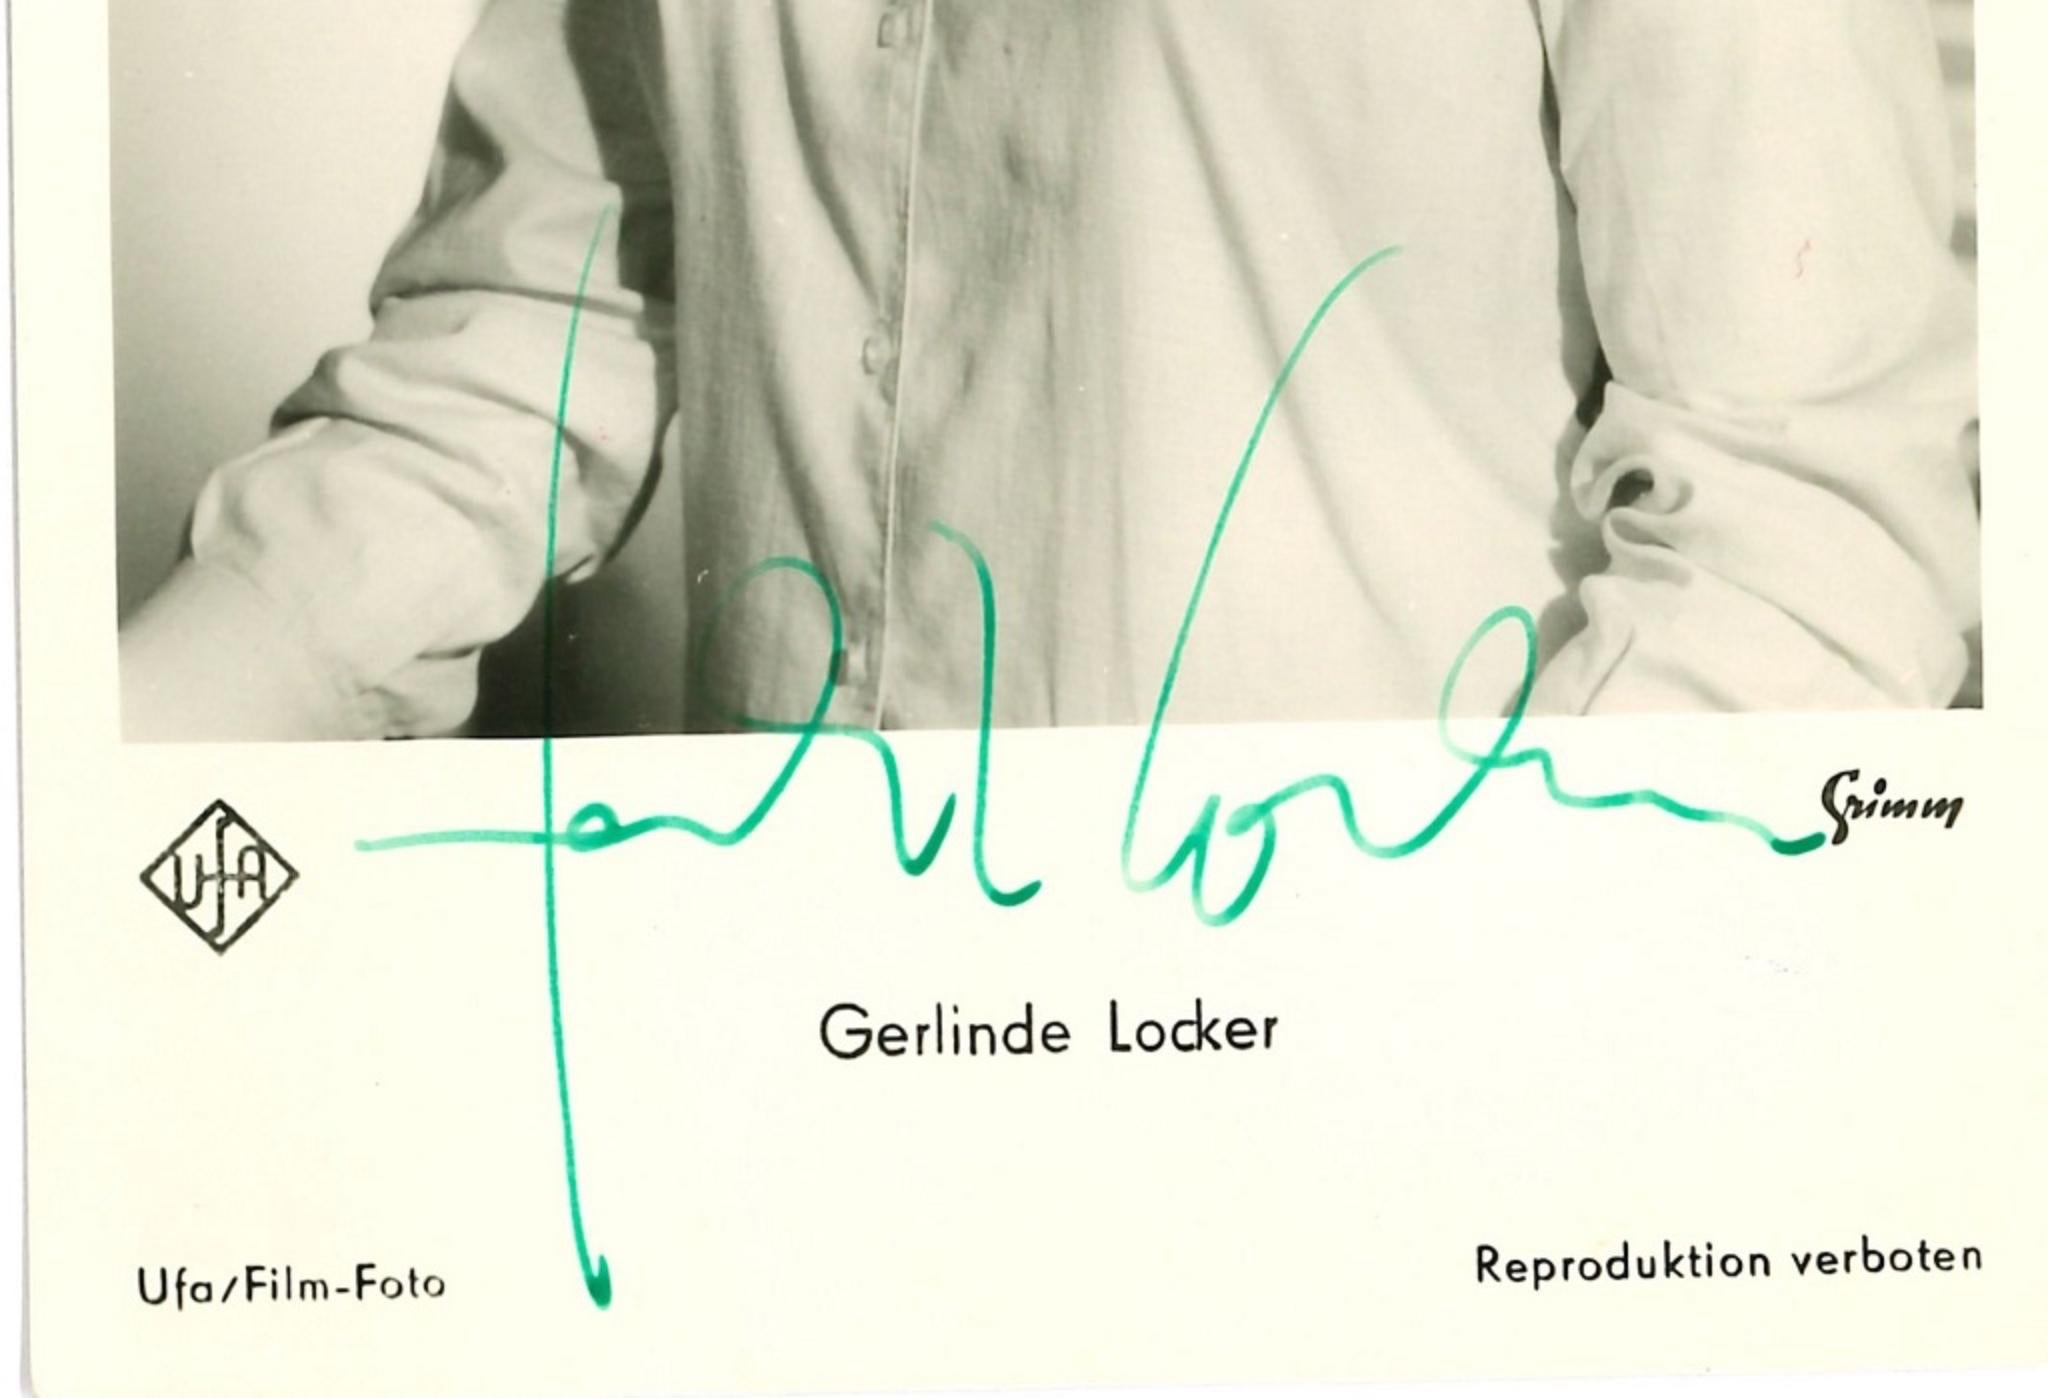 Autographische Postcard von Gerlinde Locker - Original b/w Postcard - 1960er Jahre – Photograph von Unknown